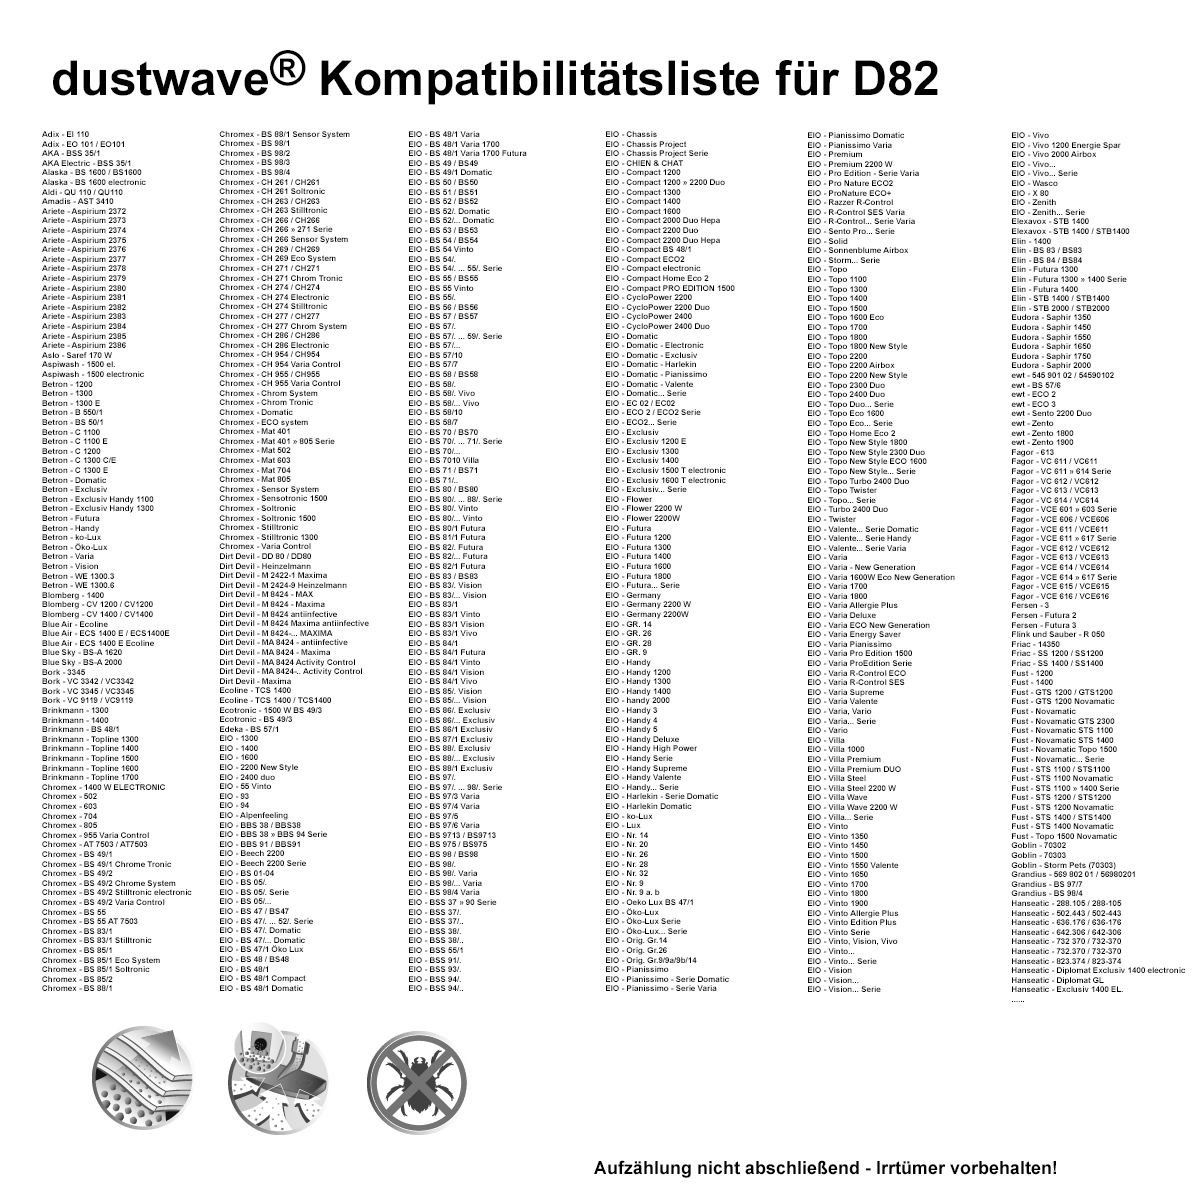 Dustwave® 10 Staubsaugerbeutel für Amadis AST 3410 - hocheffizient mit Hygieneverschluss - Made in Germany